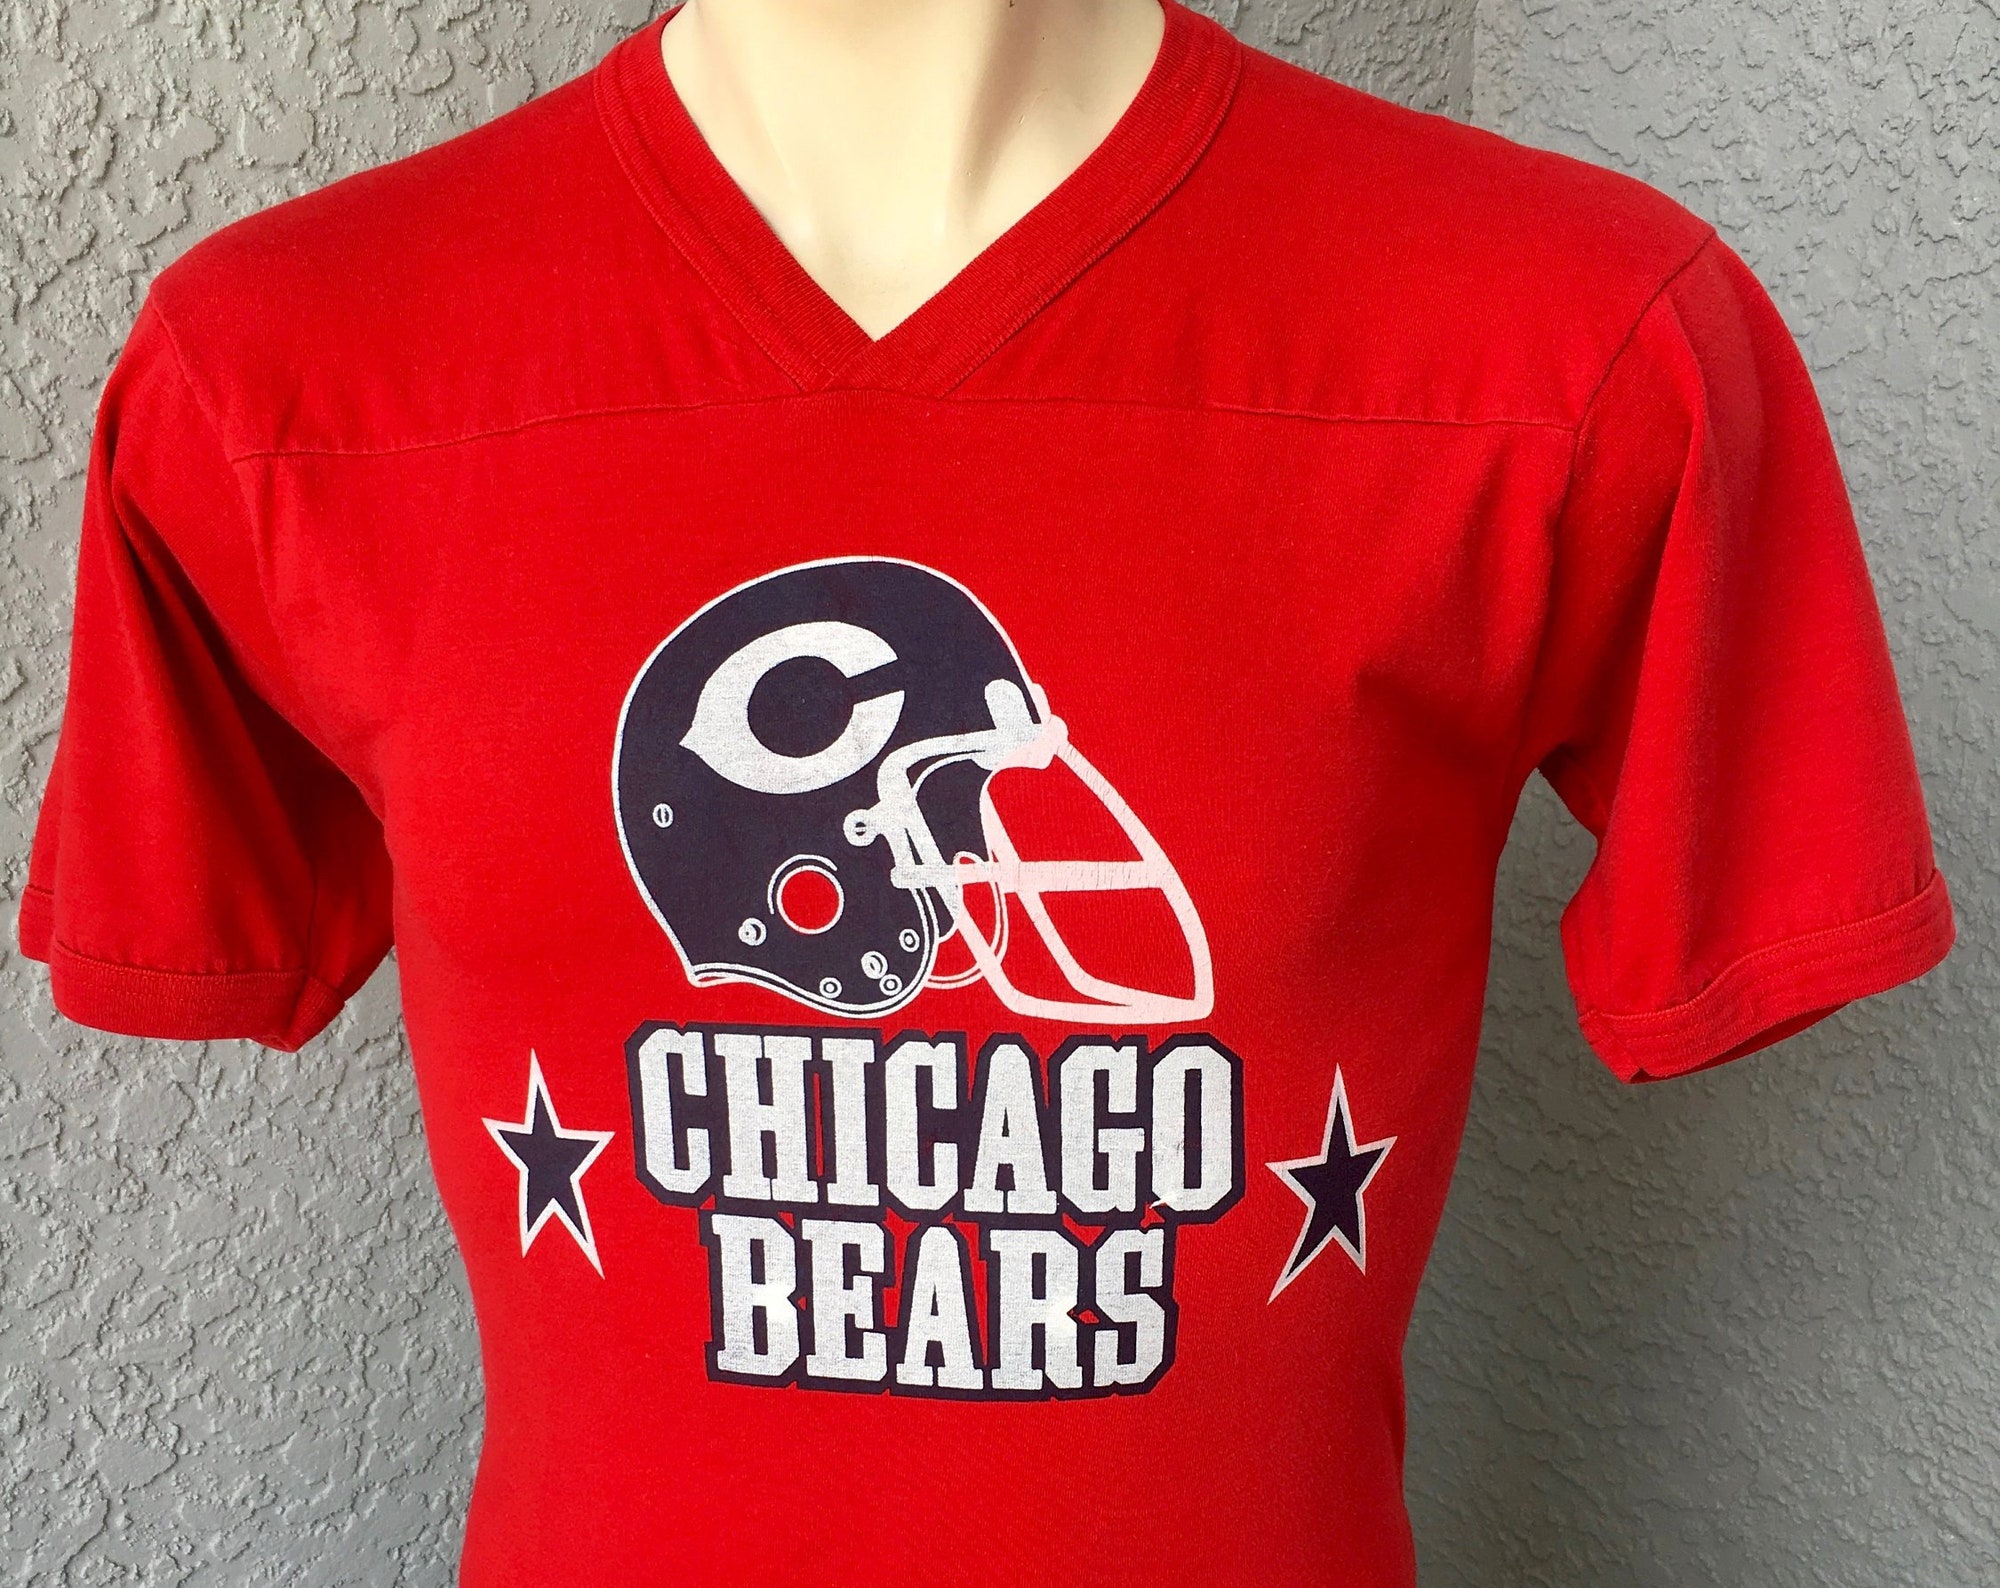 Chicago Bears 1980s vintage vneck t-shirt